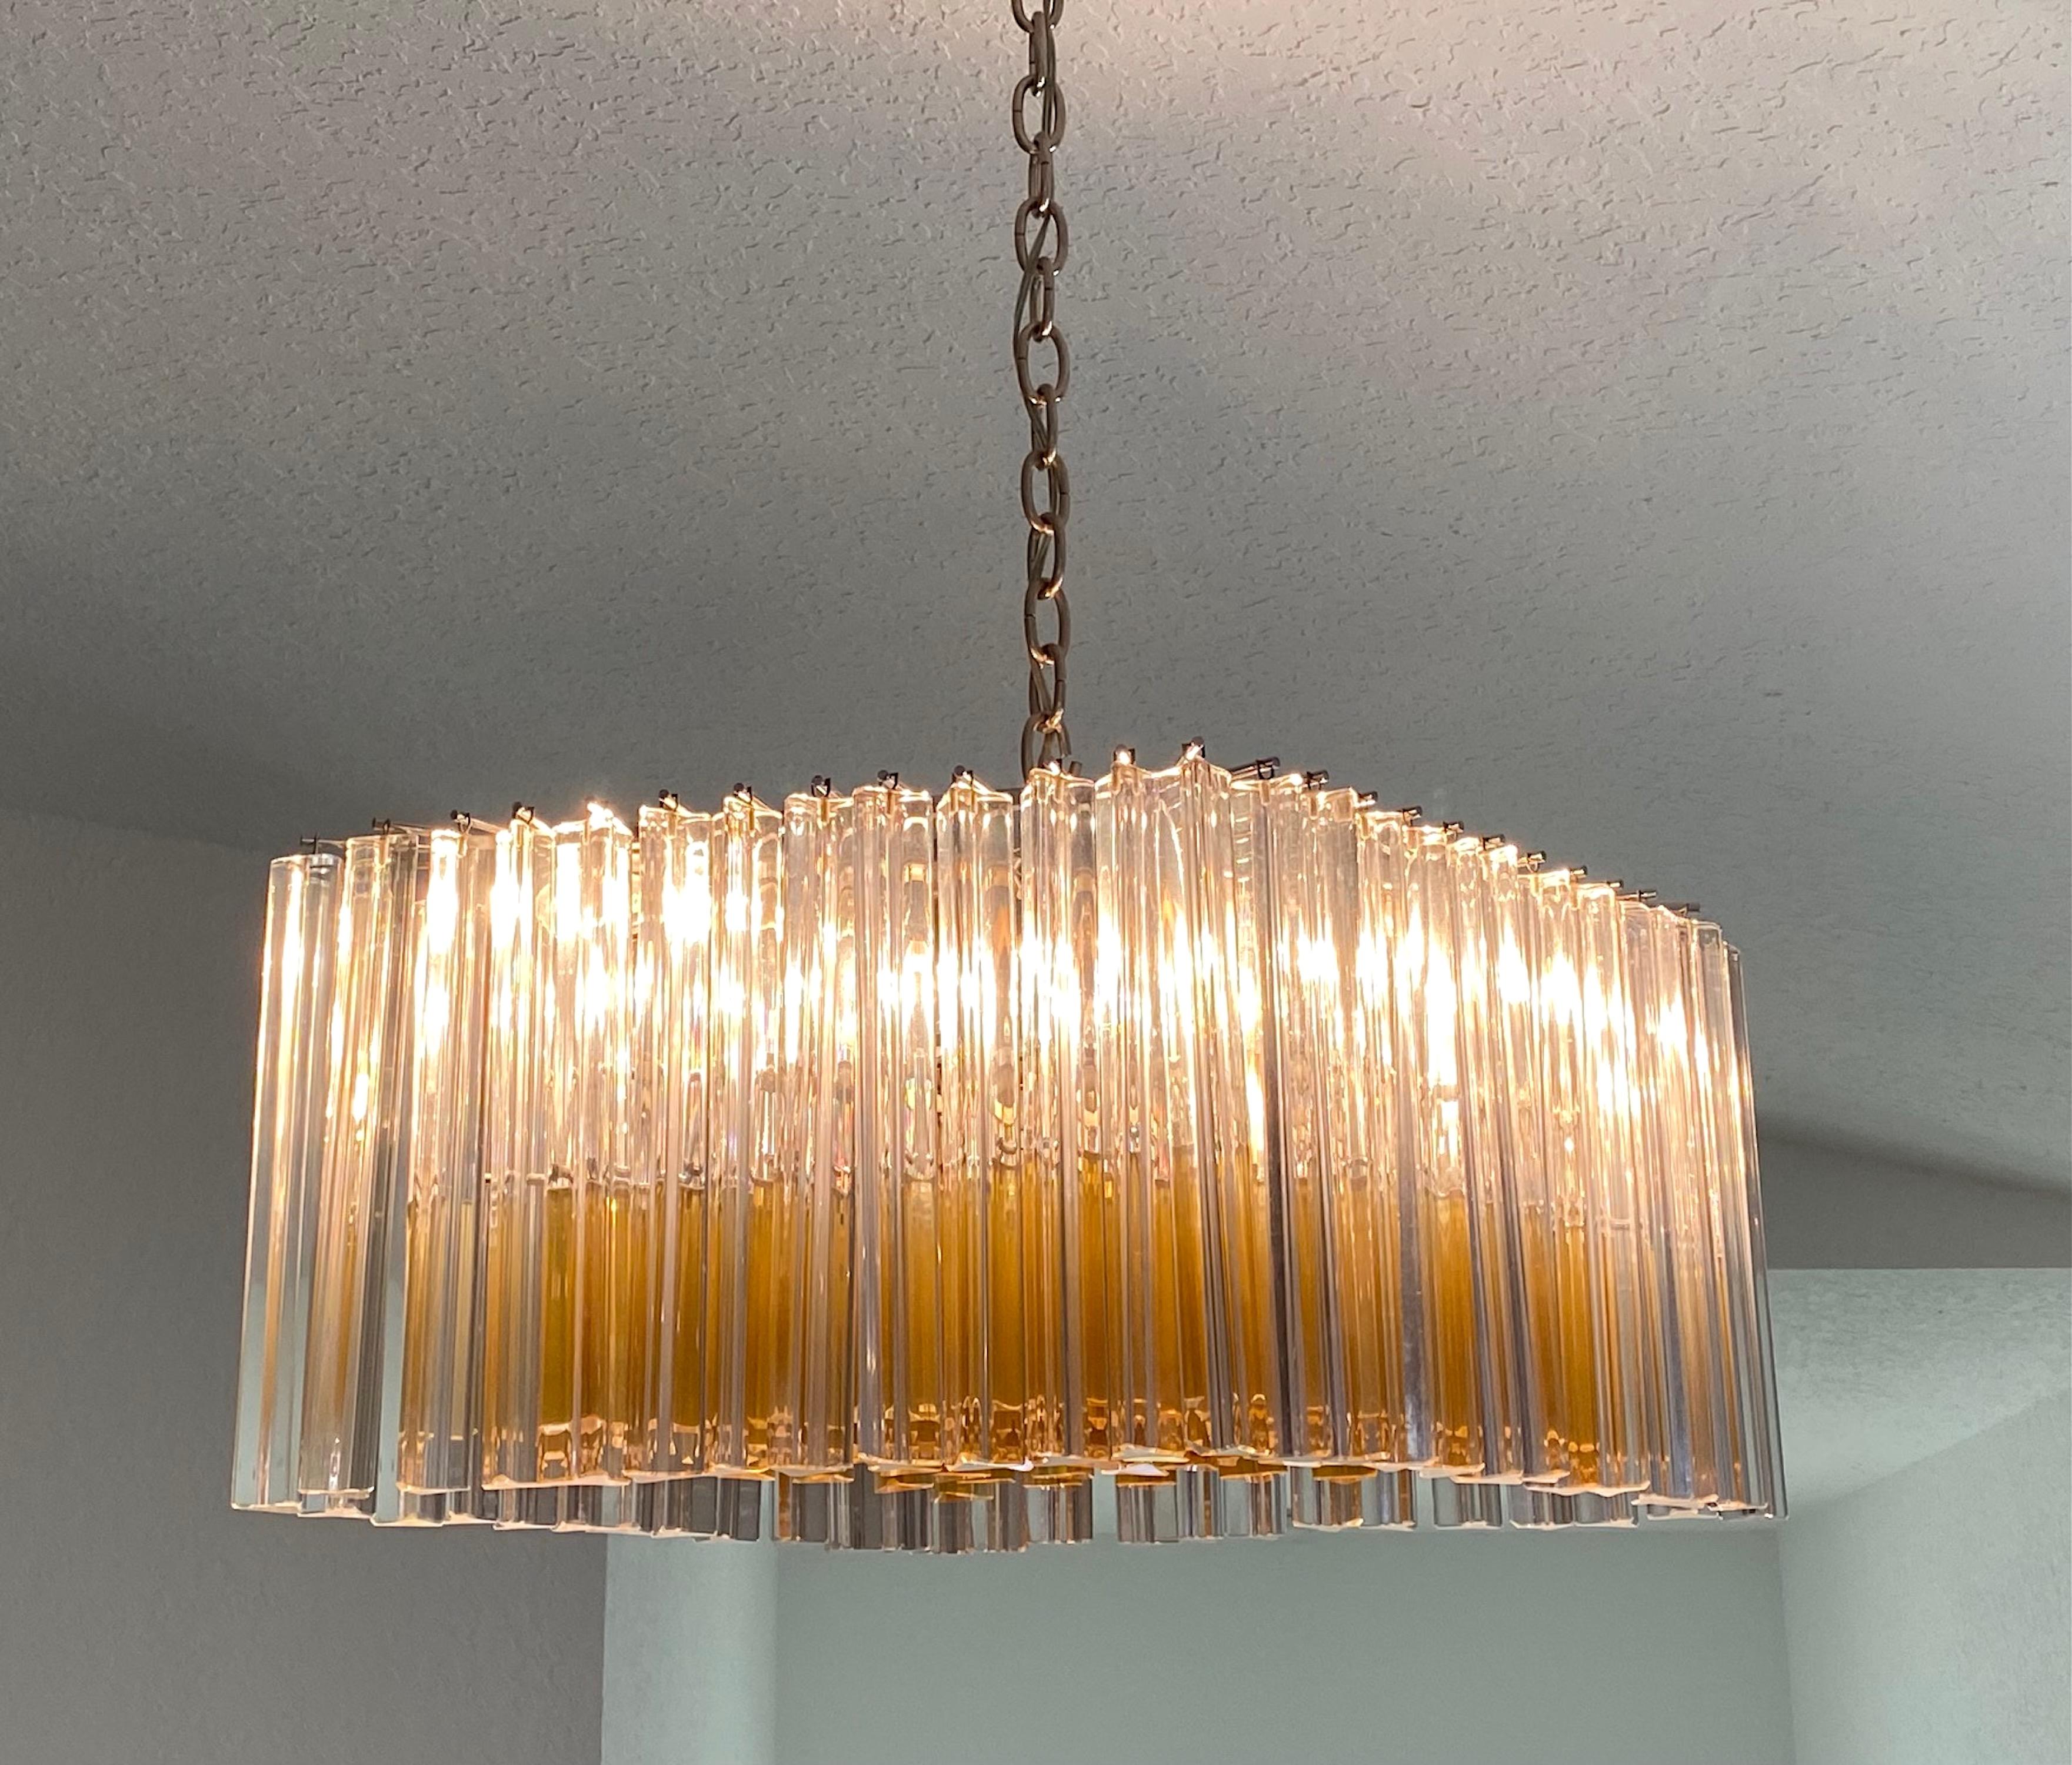 Magnifique lustre italien Venini circa 1970, avec des barres de verre Trilobi en couleur claire et longue dans la rangée extérieure, et ambre courte.  barres de couleur complétant toute la partie centrale inférieure, Italie.
Le lustre a une forme